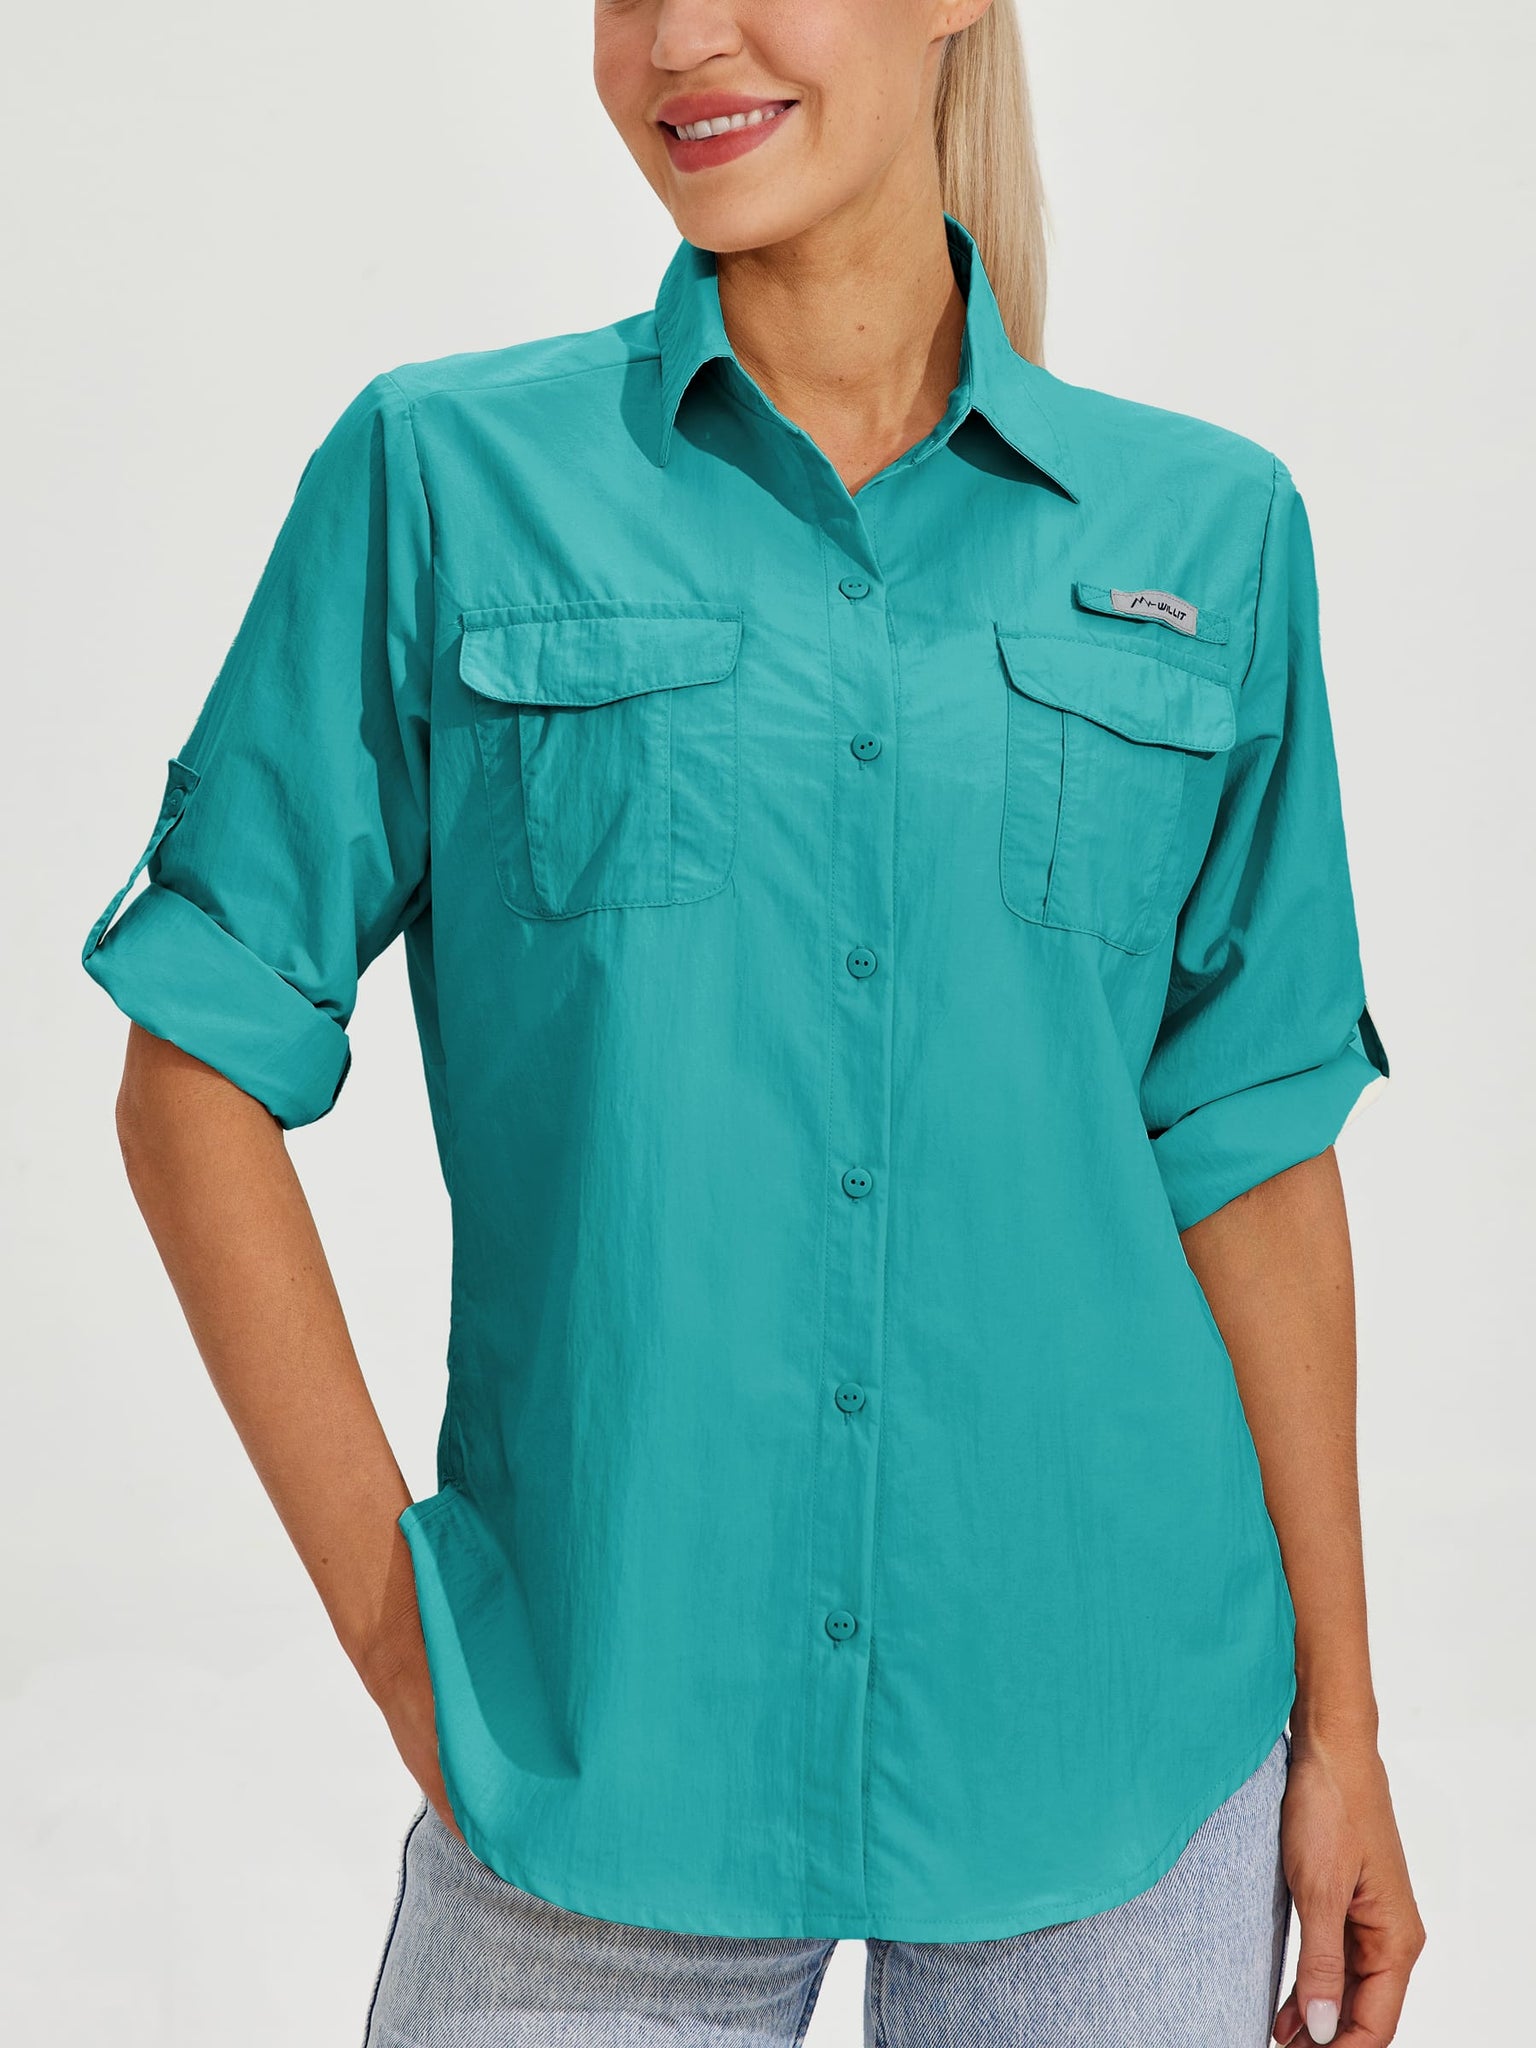 Women's Long Sleeve Fishing Shirt_Teal_model6